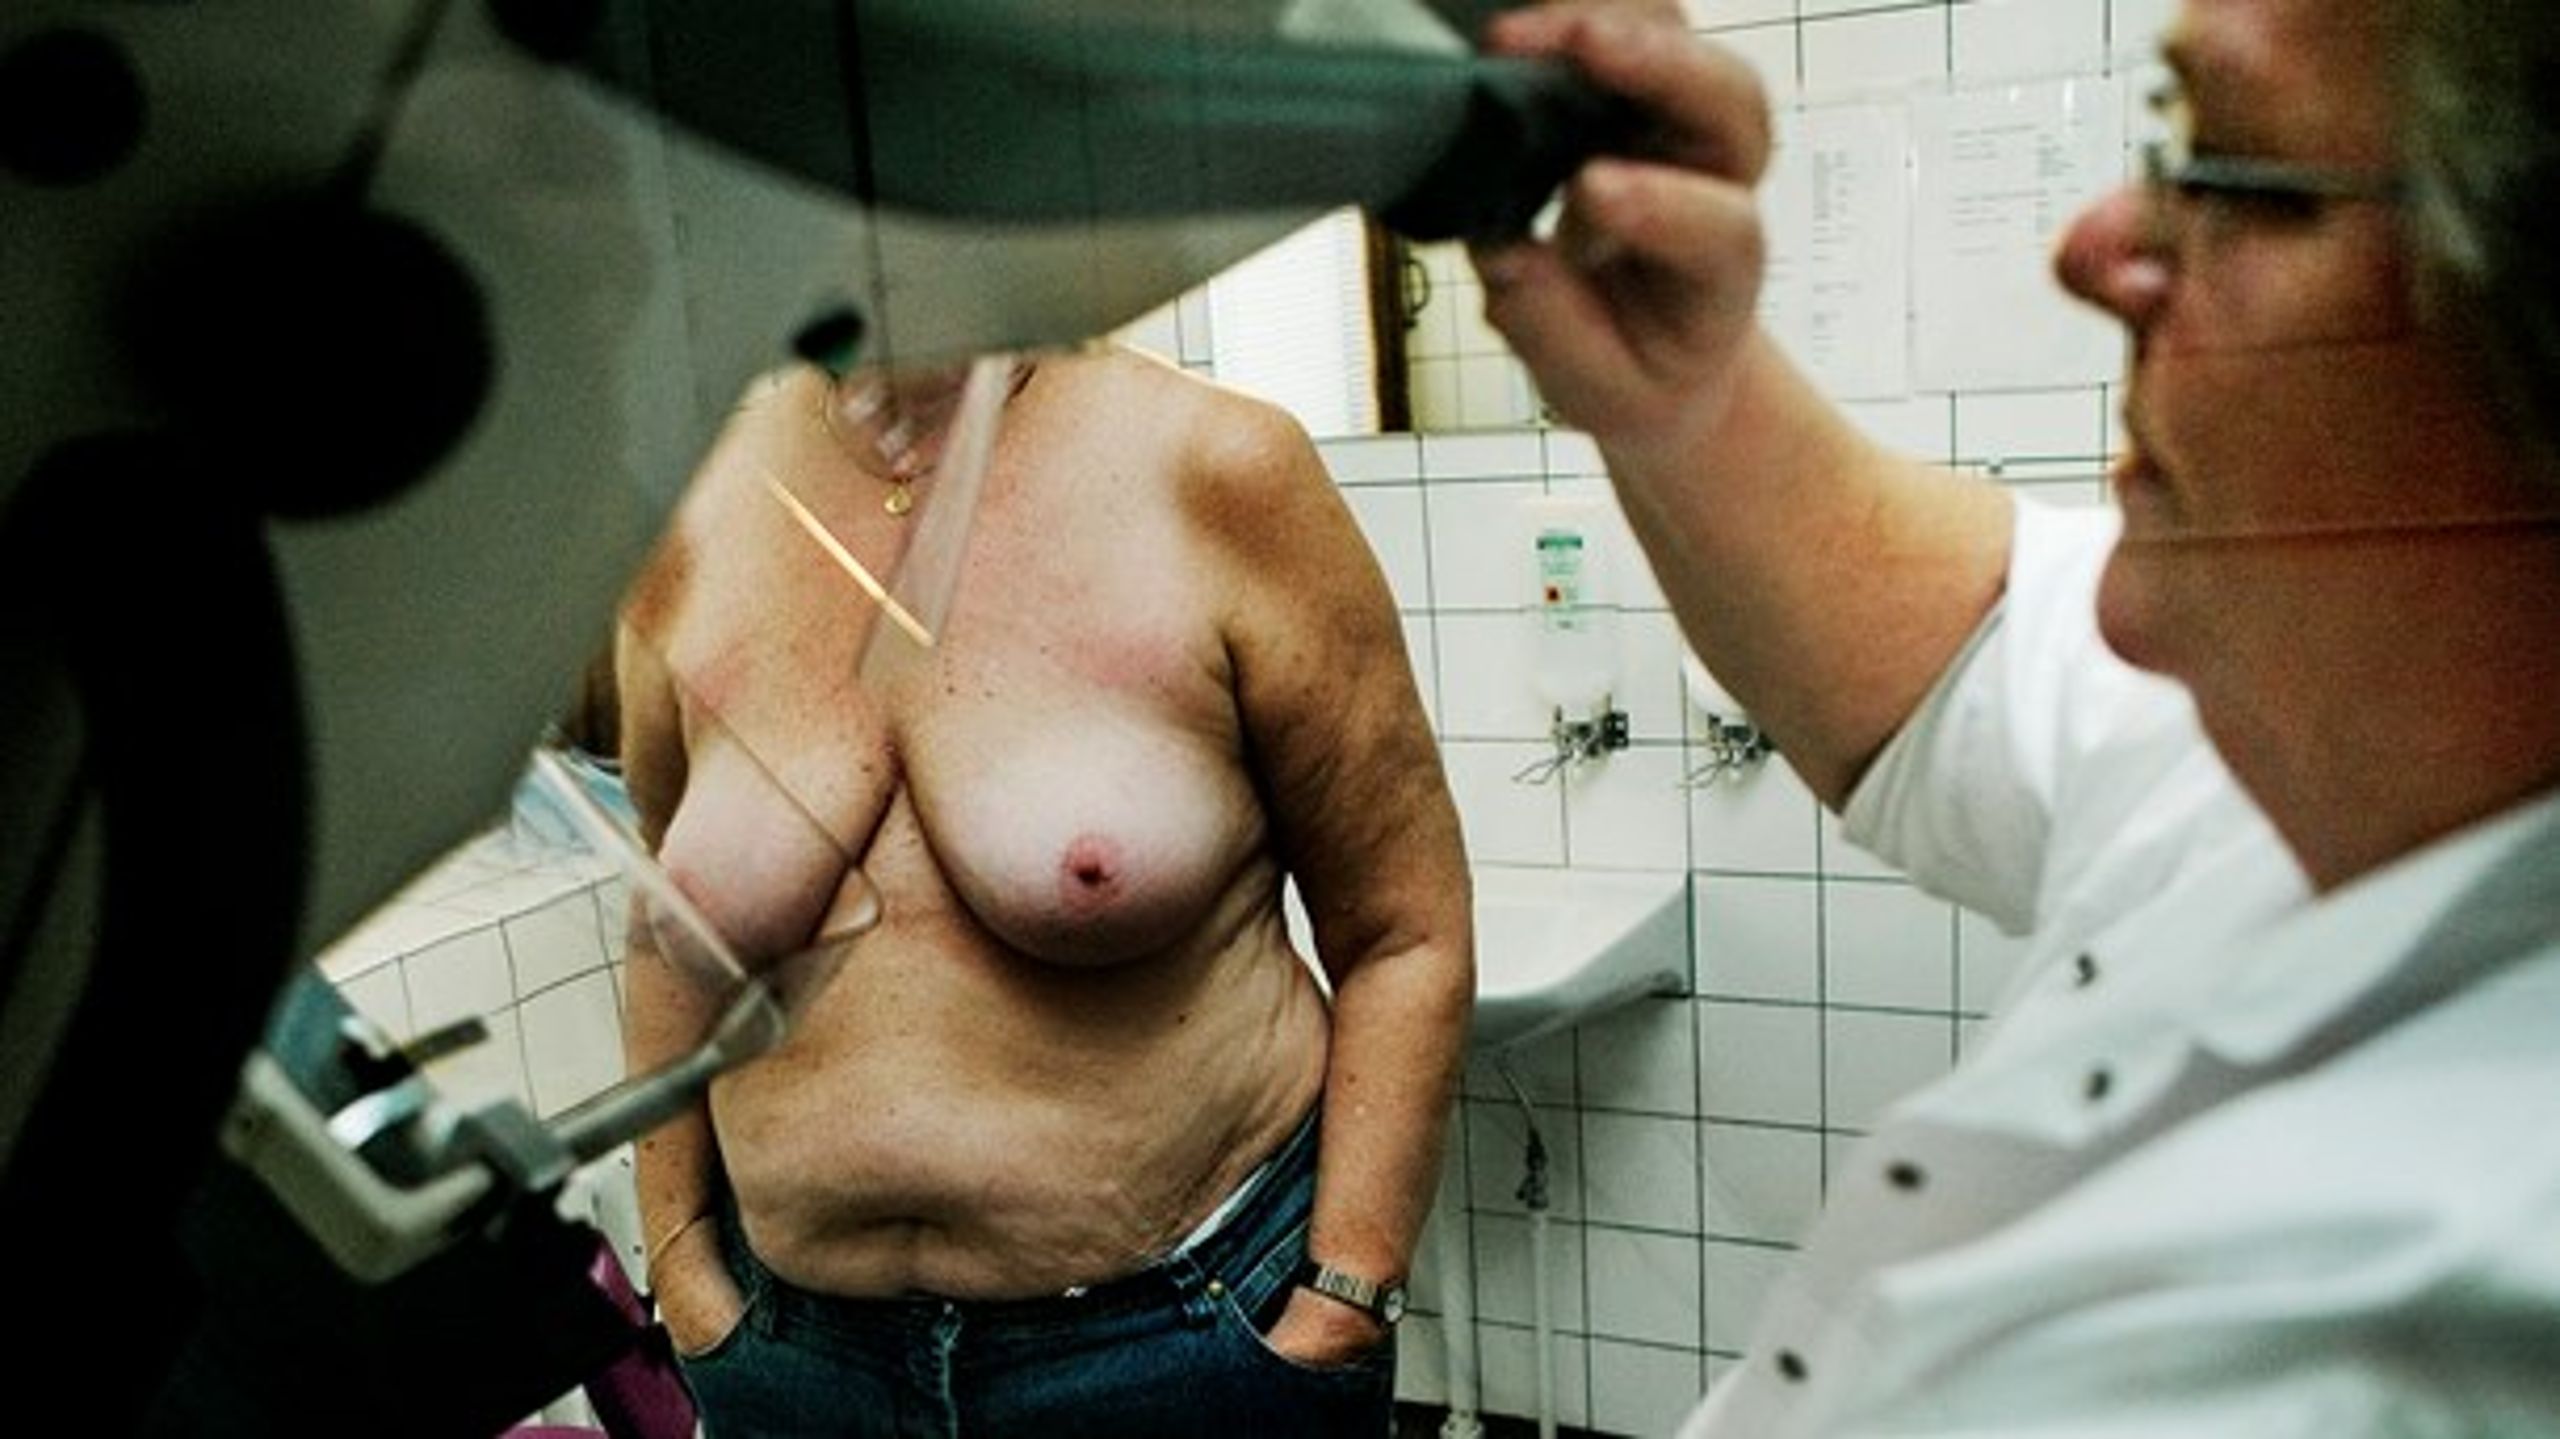 DR's serie 'De udenlandske læger' og Jyllands-Postens artikelserie om brystkræftsagen har vist, at medierne var forudindtagende, mener tidligere sygehusdirektør Vagn Bach.